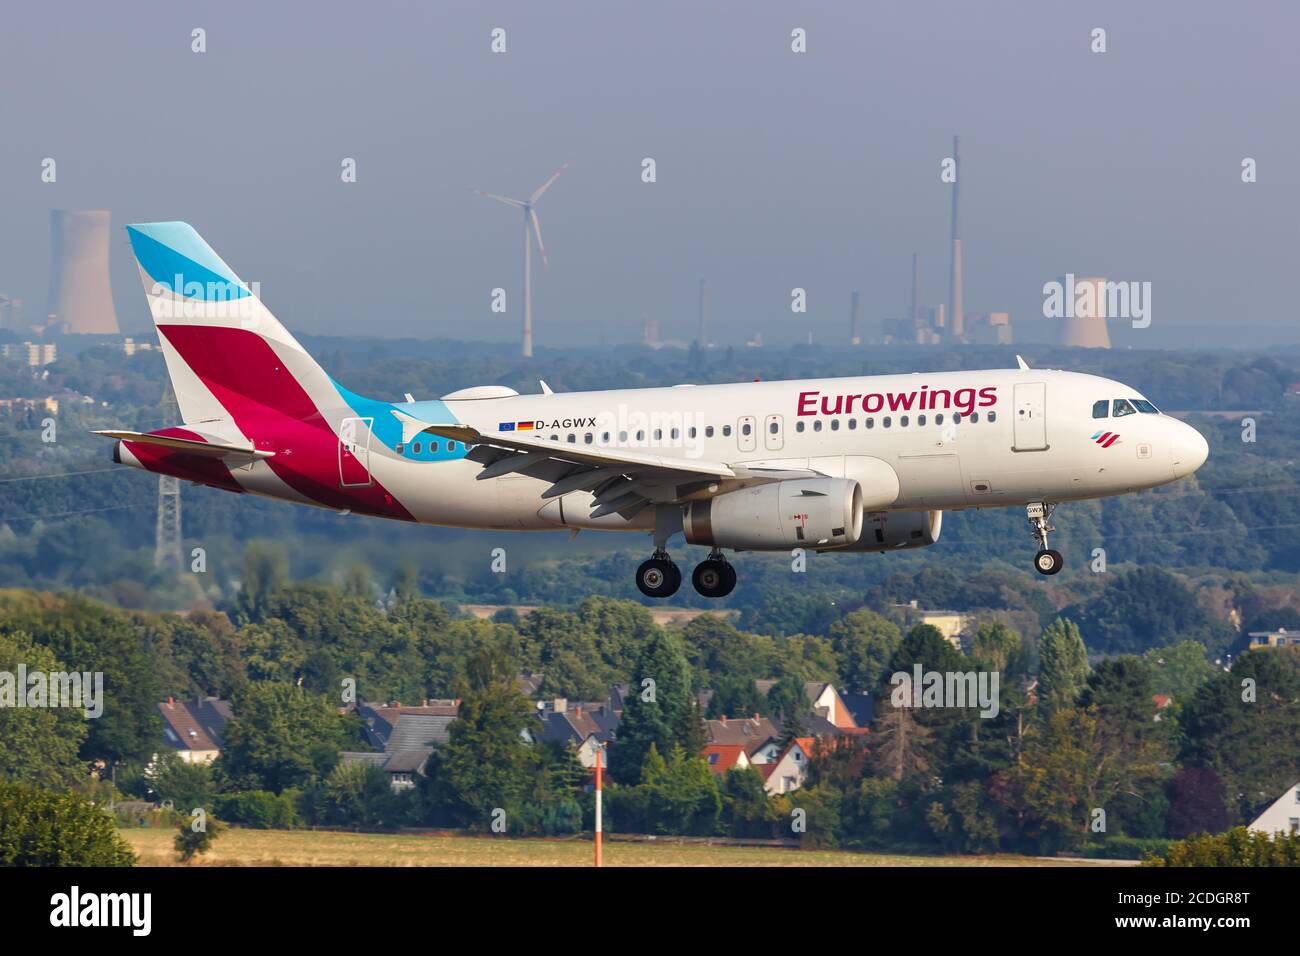 Dortmund, Allemagne - 10 août 2020 : Eurowings Airbus A319 à l'aéroport de Dortmund (DTM) en Allemagne. Airbus est un fabricant européen d'avions b Banque D'Images